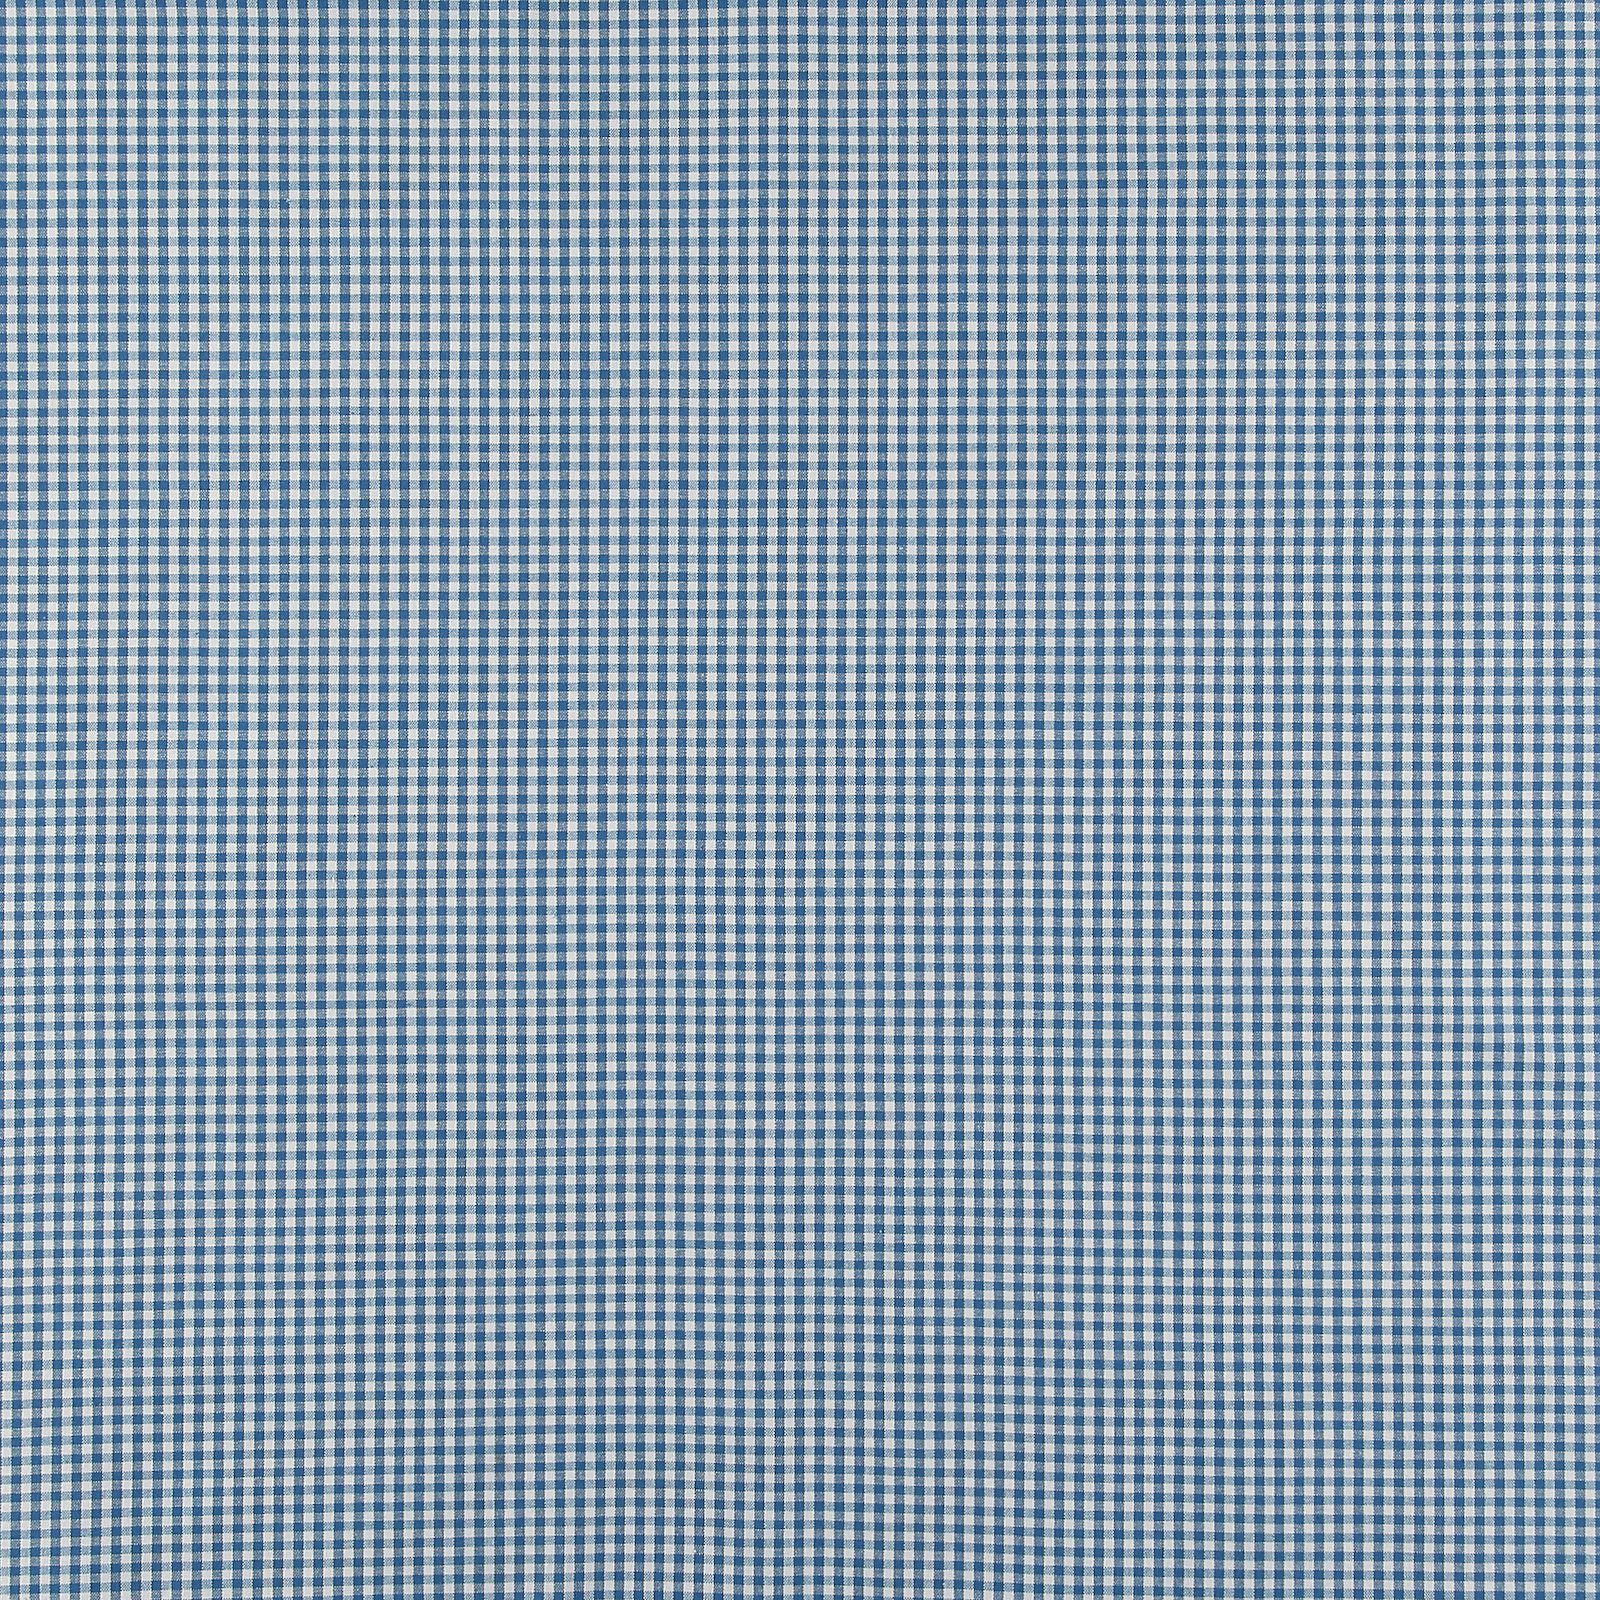 Baumwolle, blau/weiß kariert garngefärbt 816294_pack_sp